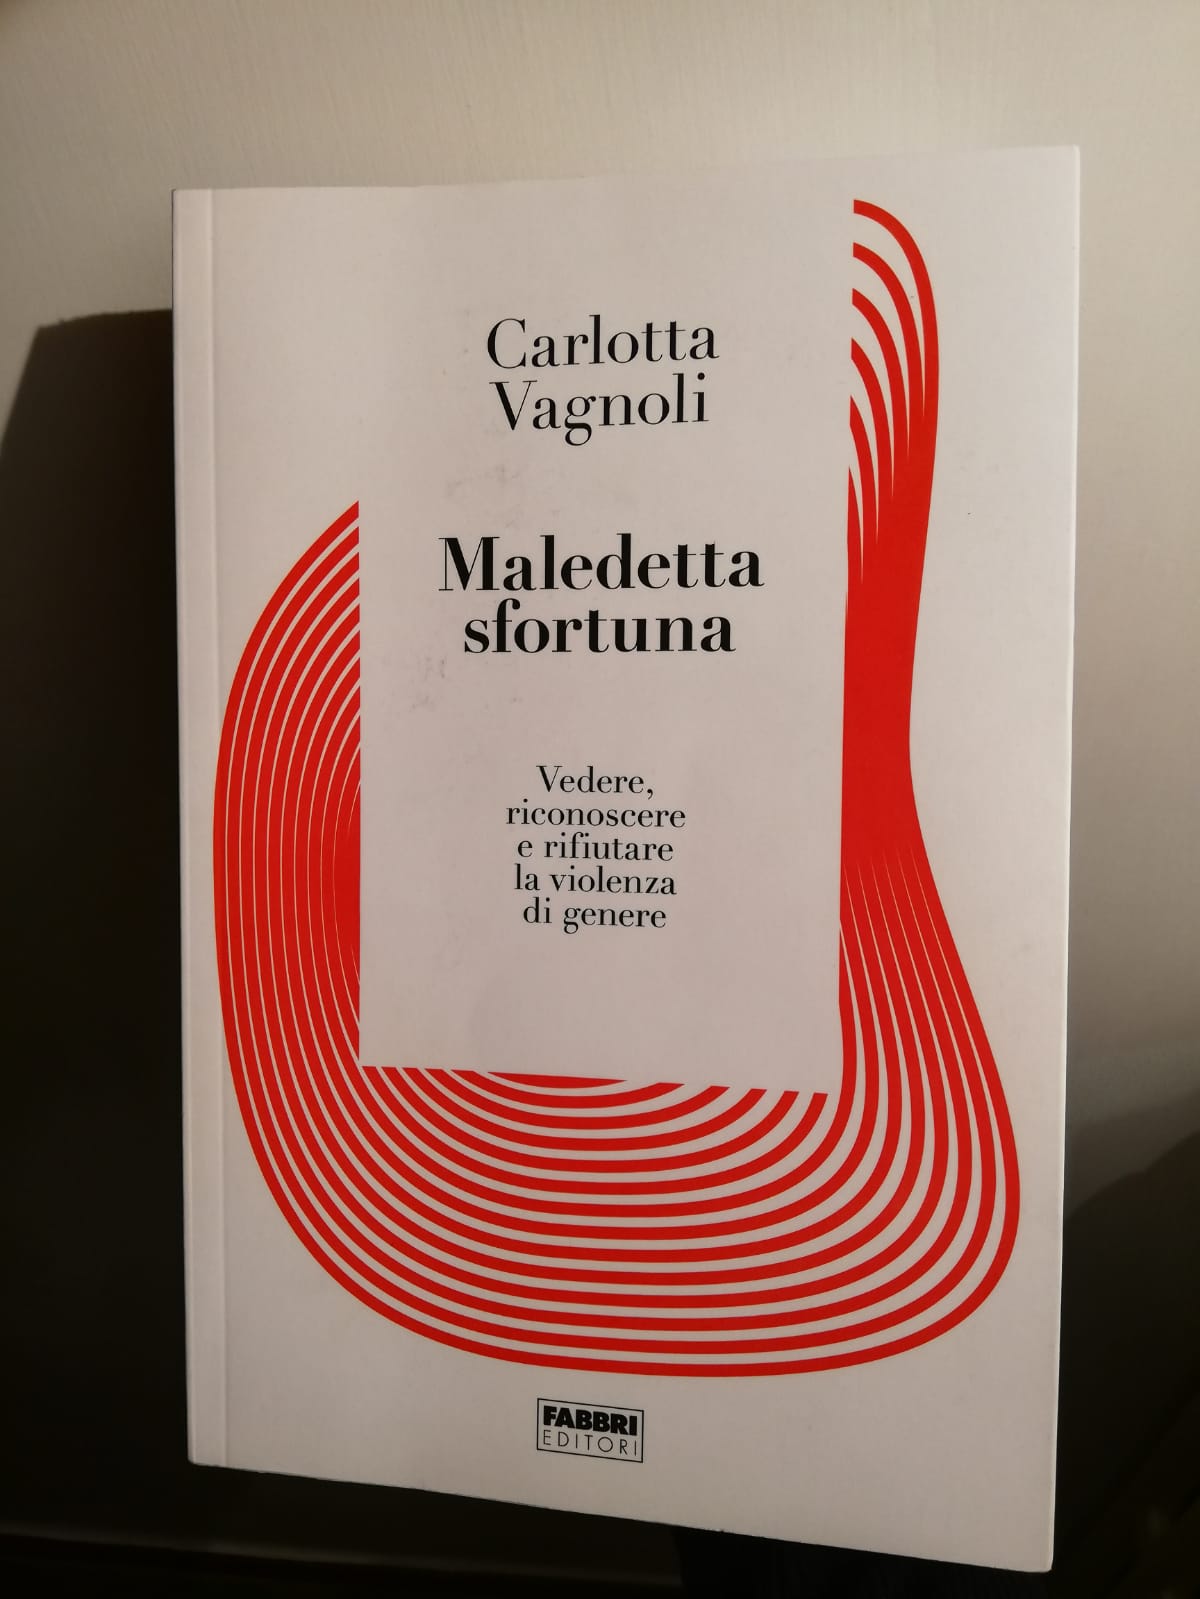 “Maledetta sfortuna”, il libro di Carlotta Vagnoli per riconoscere e combattere la violenza di genere